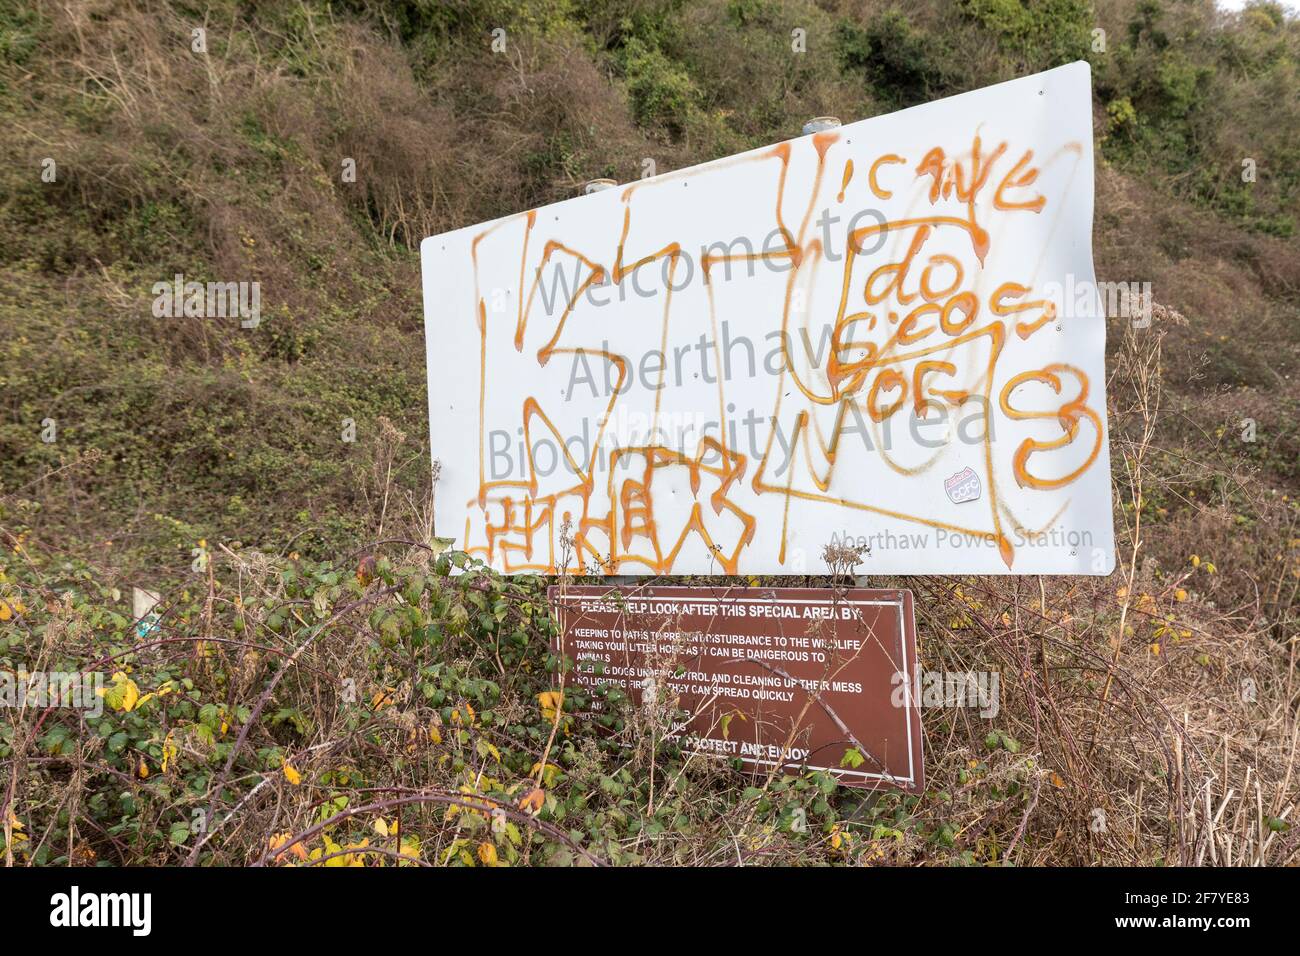 Graffiti sur le signe de la biodiversité, Aberdew, pays de Galles, Royaume-Uni Banque D'Images